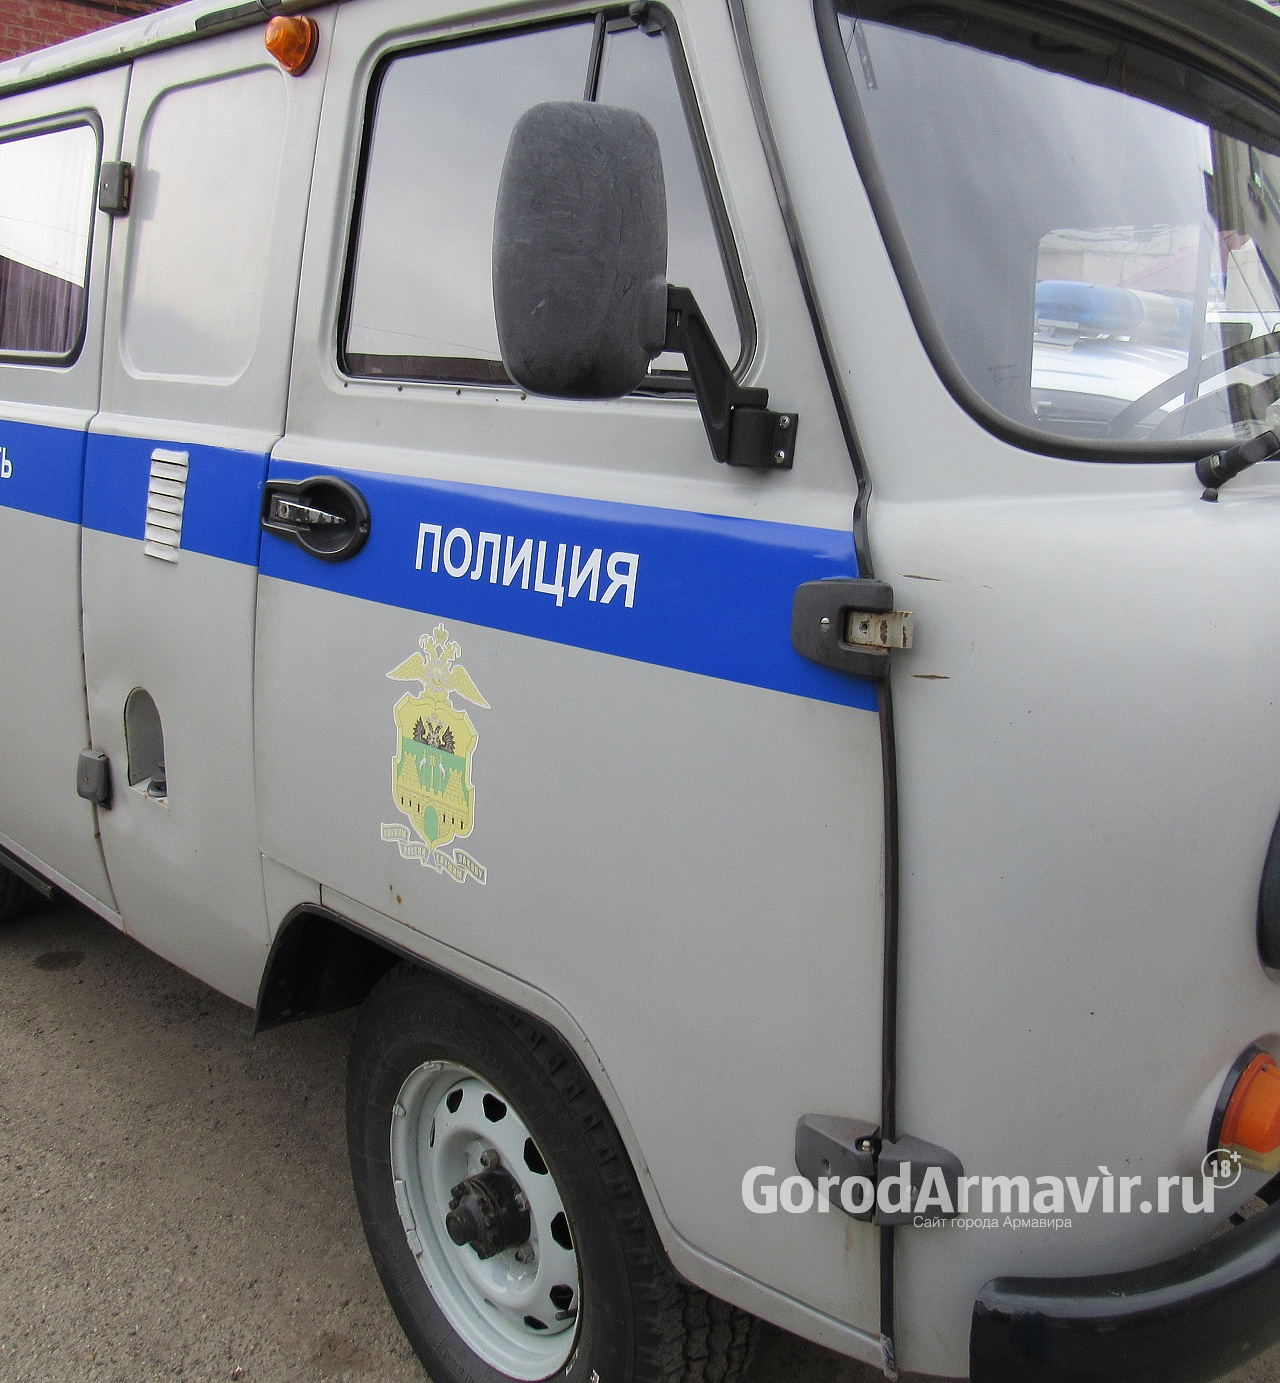 Полицейские Армавира задержали вора 3,7 млн руб 